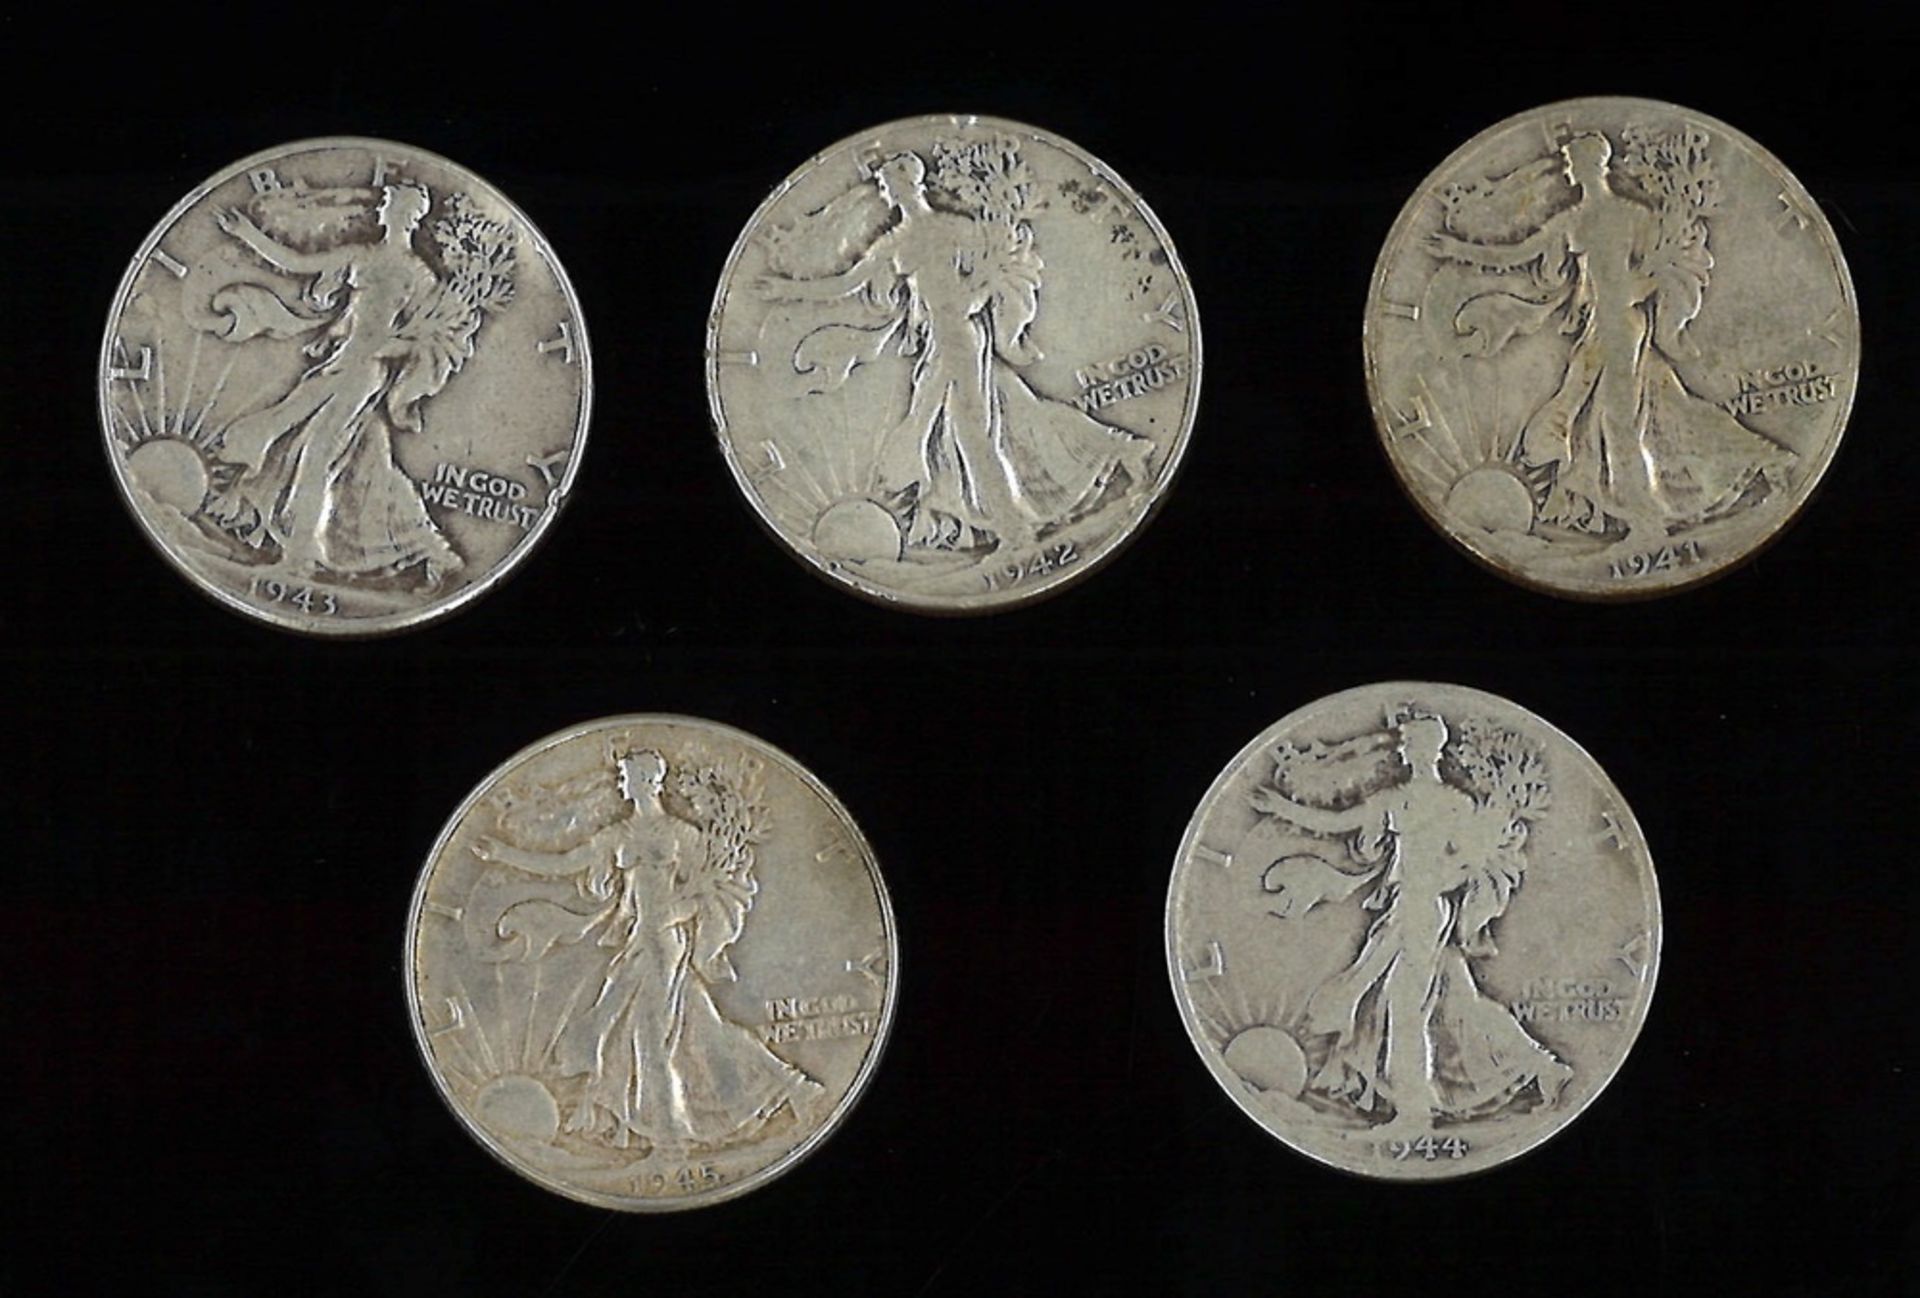 Lot von 1/2 Silberdollar, 900er Silber, 1941-1945. Insgesamt 5 Stück.